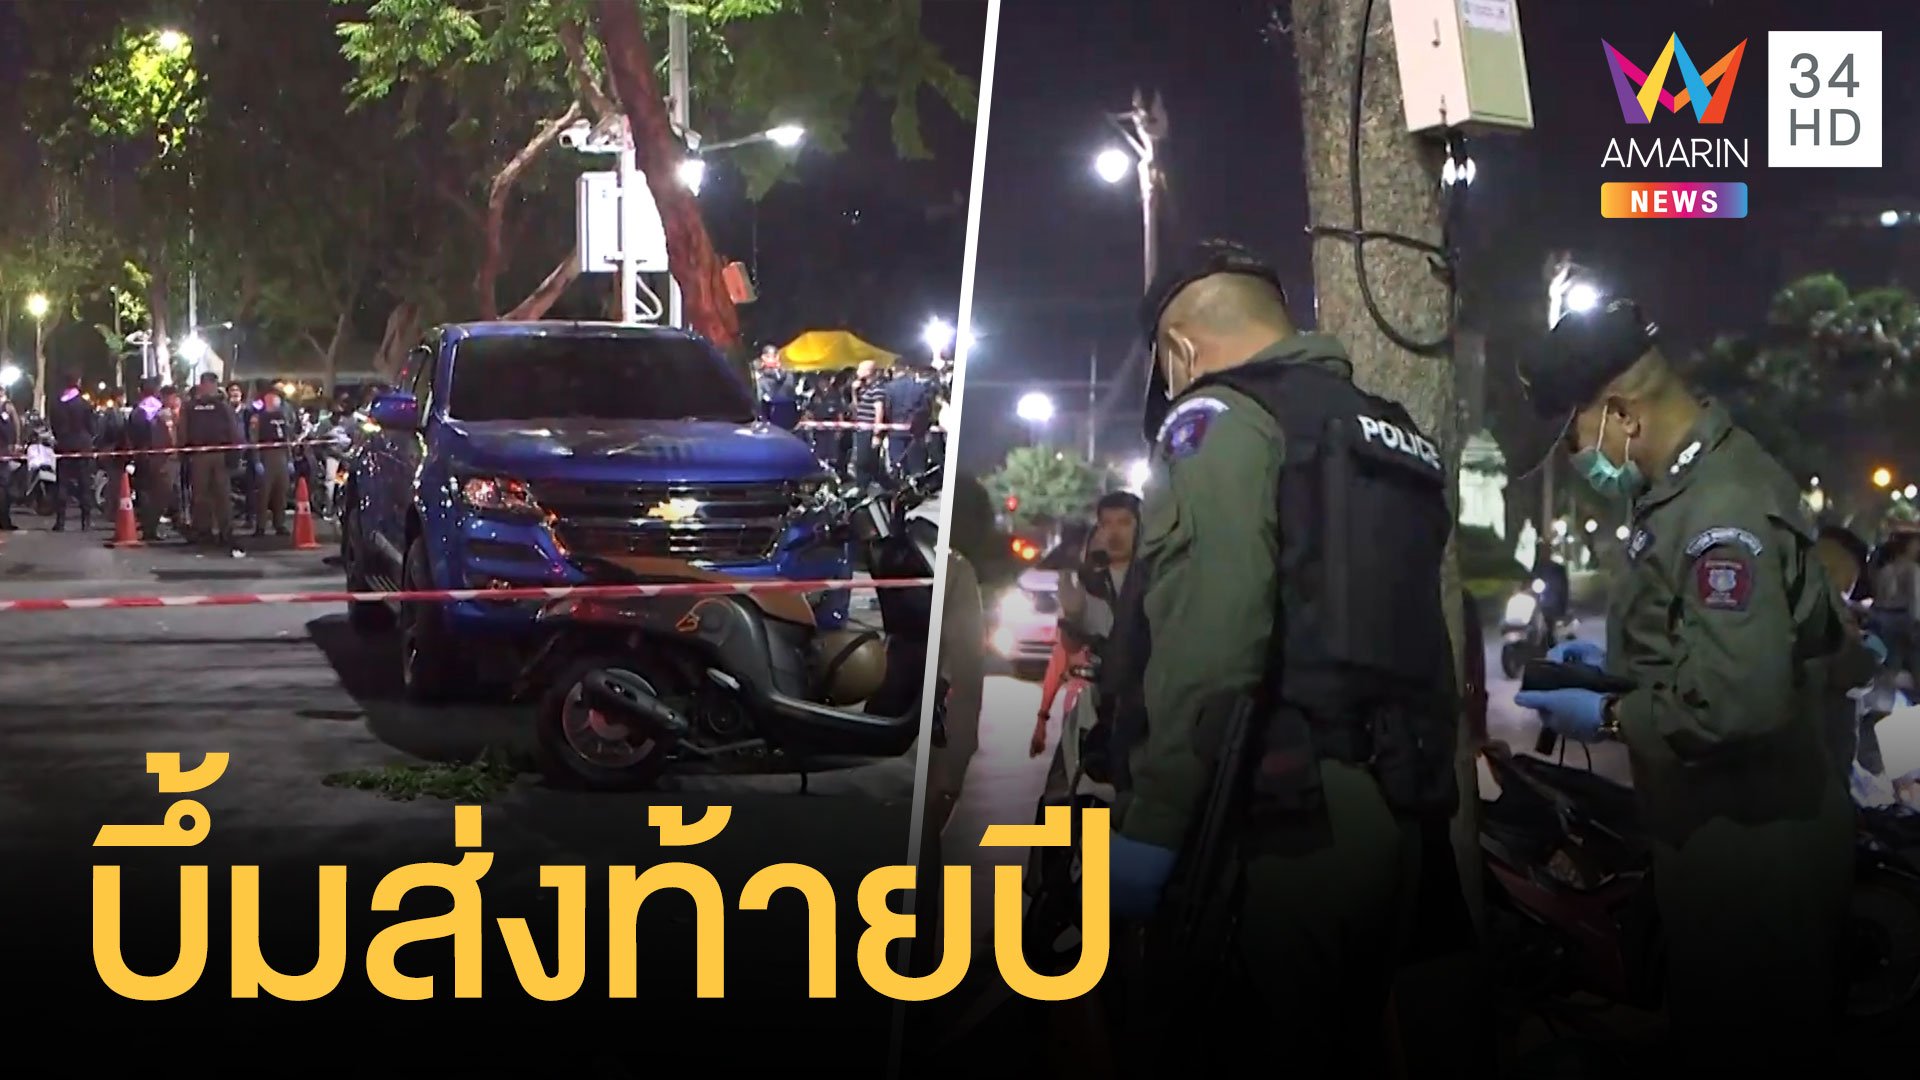 ปาระเบิดใส่ม็อบขายกุ้ง เจ็บ 4 คน มีตำรวจกับชาวบ้าน | ข่าวอรุณอมรินทร์ | 1 ม.ค. 64 | AMARIN TVHD34